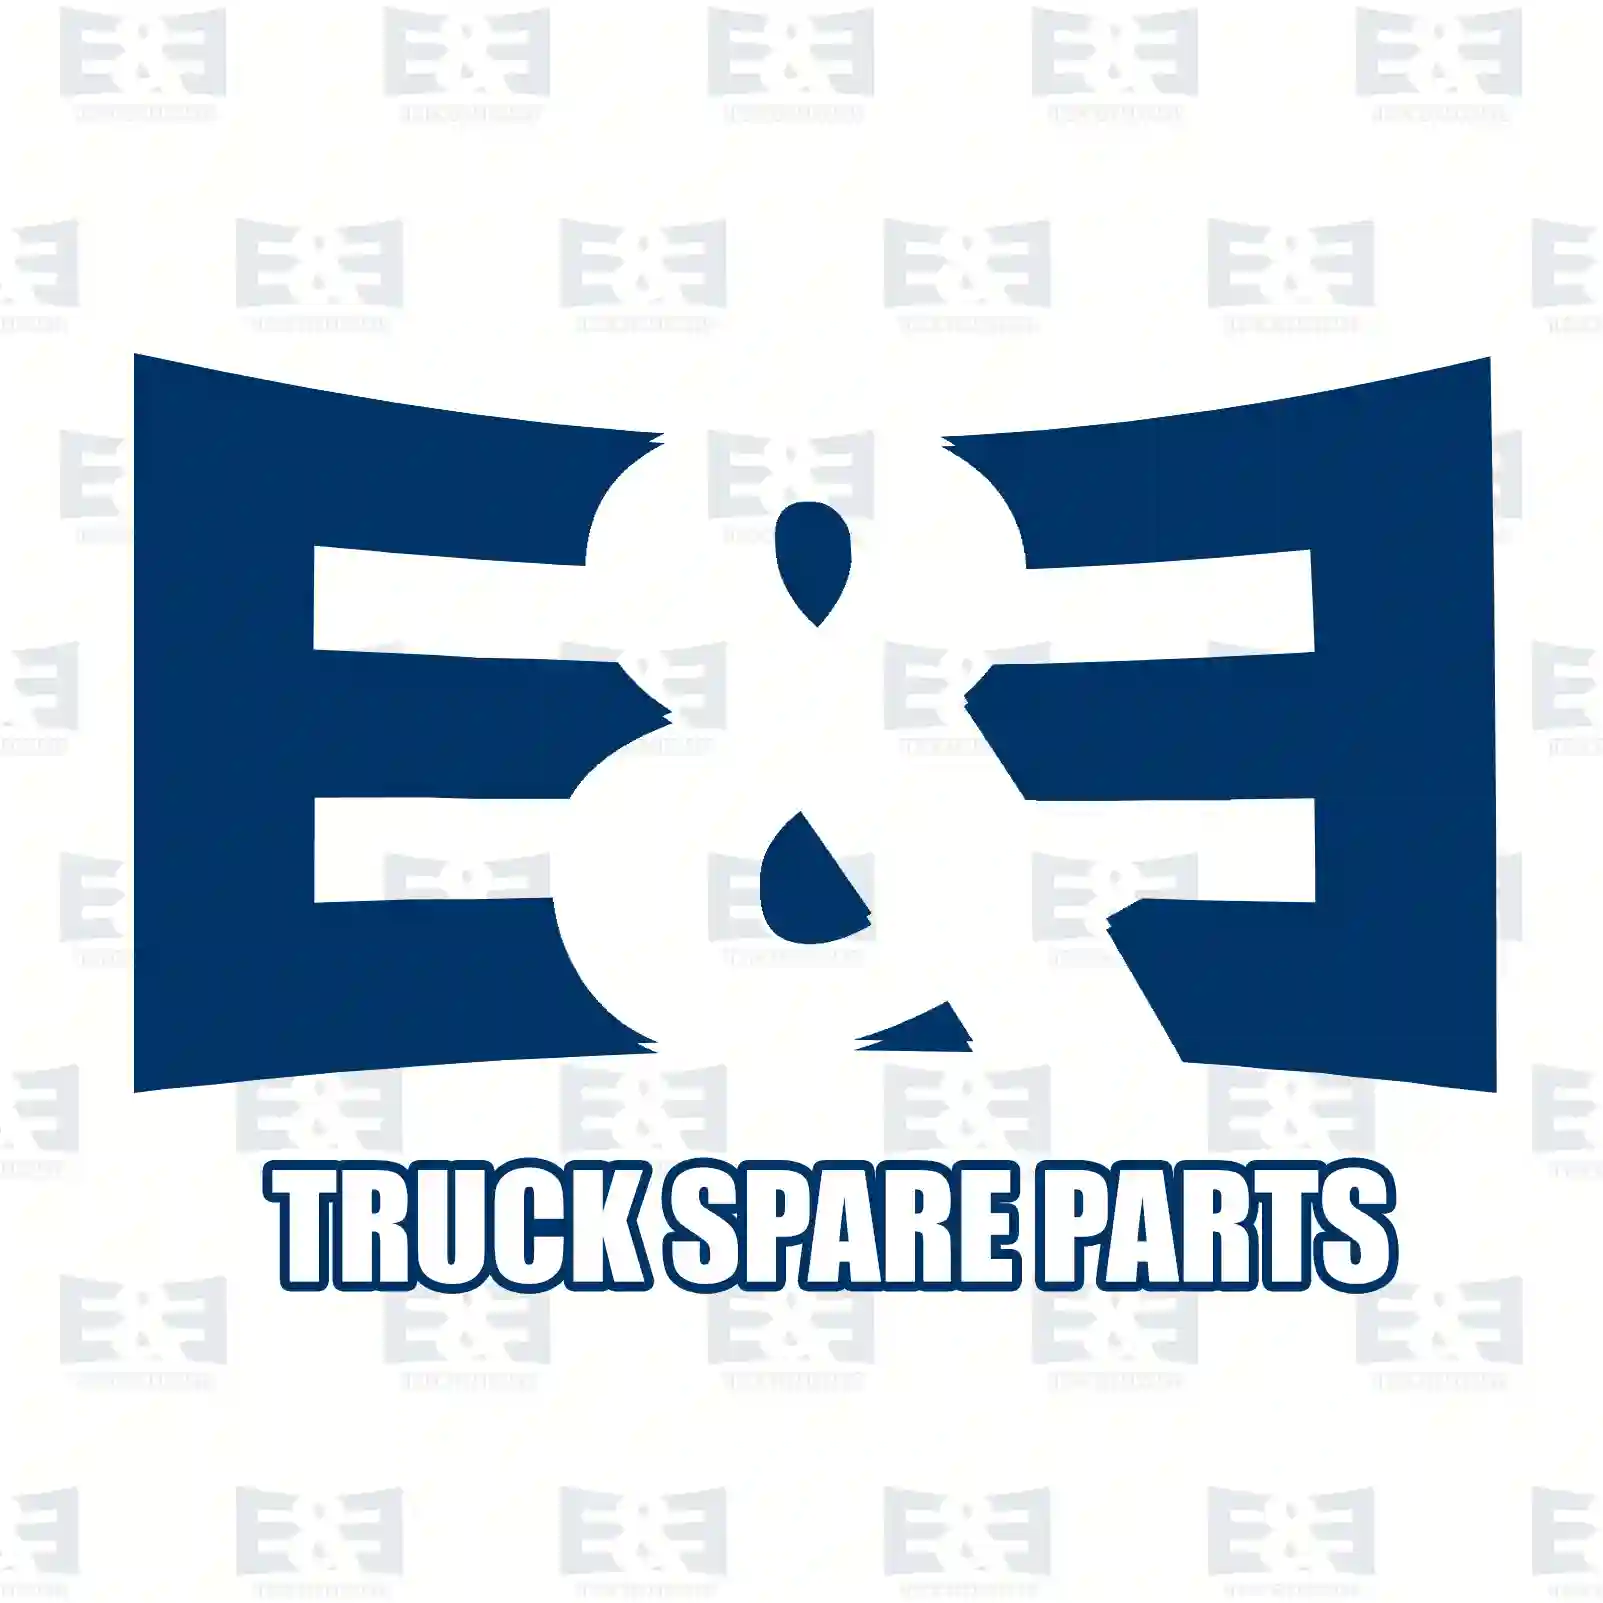 Unit injector, 2E2286713, 500380884, 02995484, 02998524, 500380884 ||  2E2286713 E&E Truck Spare Parts | Truck Spare Parts, Auotomotive Spare Parts Unit injector, 2E2286713, 500380884, 02995484, 02998524, 500380884 ||  2E2286713 E&E Truck Spare Parts | Truck Spare Parts, Auotomotive Spare Parts